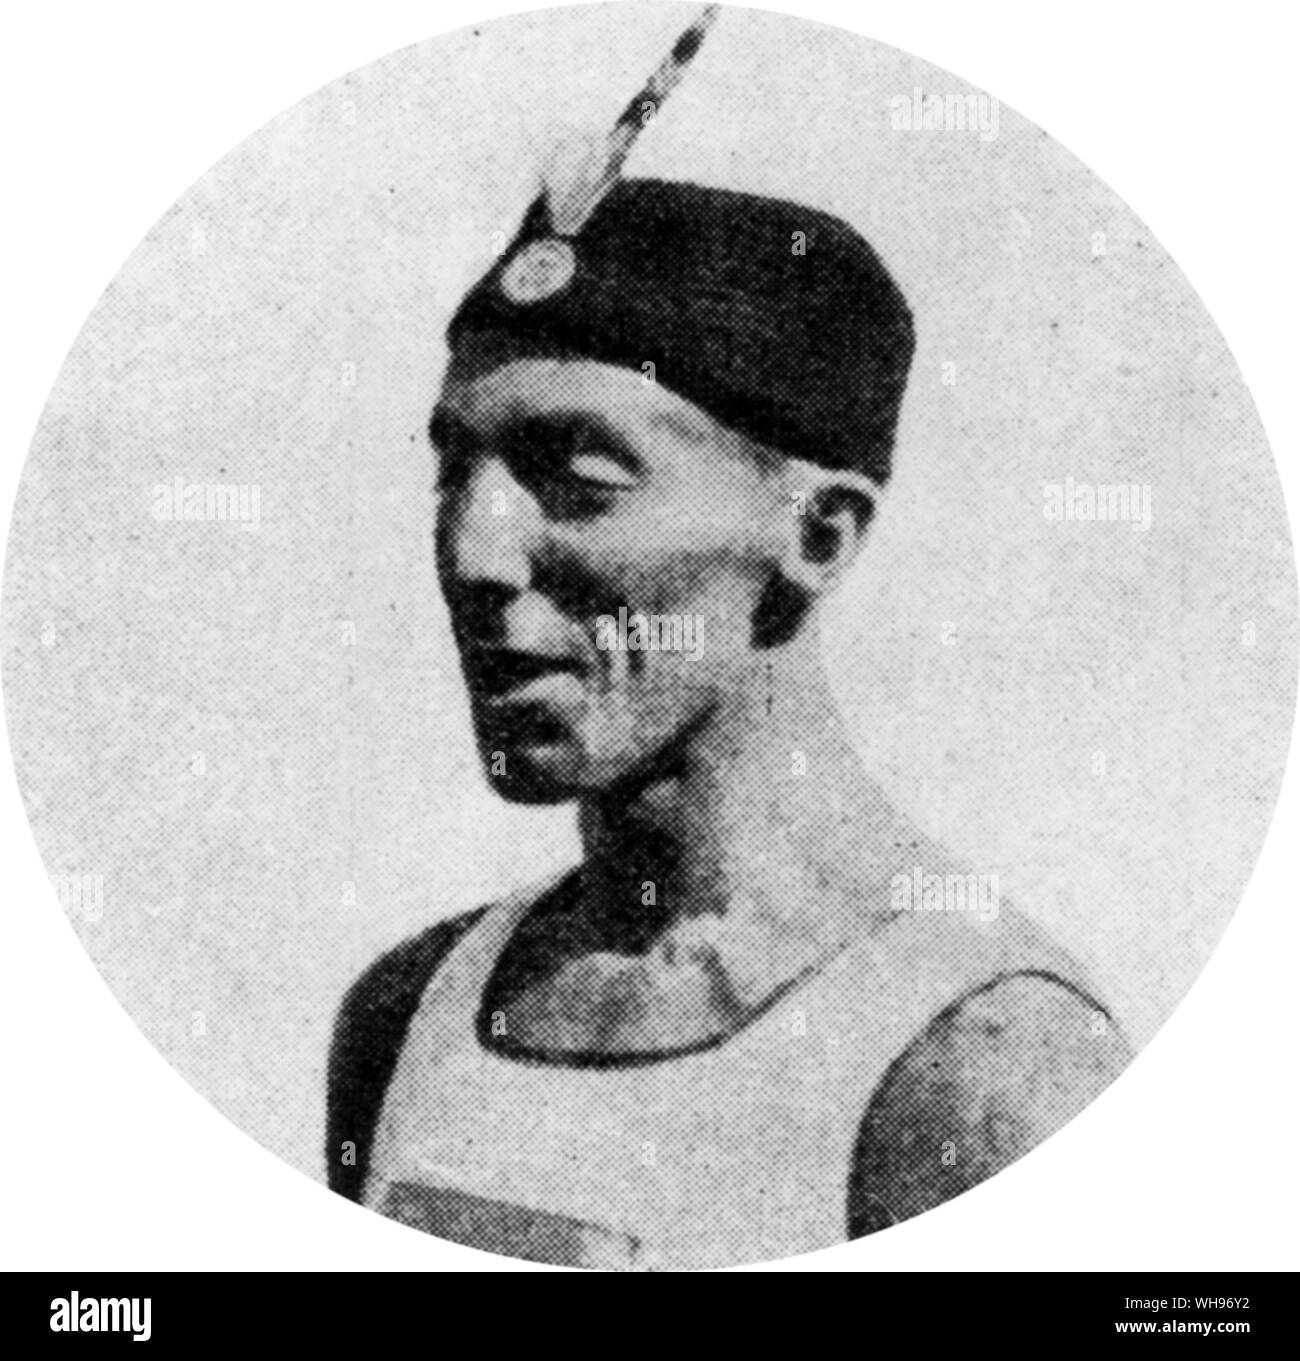 Frankreich, Paris Olympics, 1924: Leon Stukelj aus Jugoslawien, die zahlreiche Medaillen bei Weltmeisterschaften und Olympischen Spielen. Stockfoto